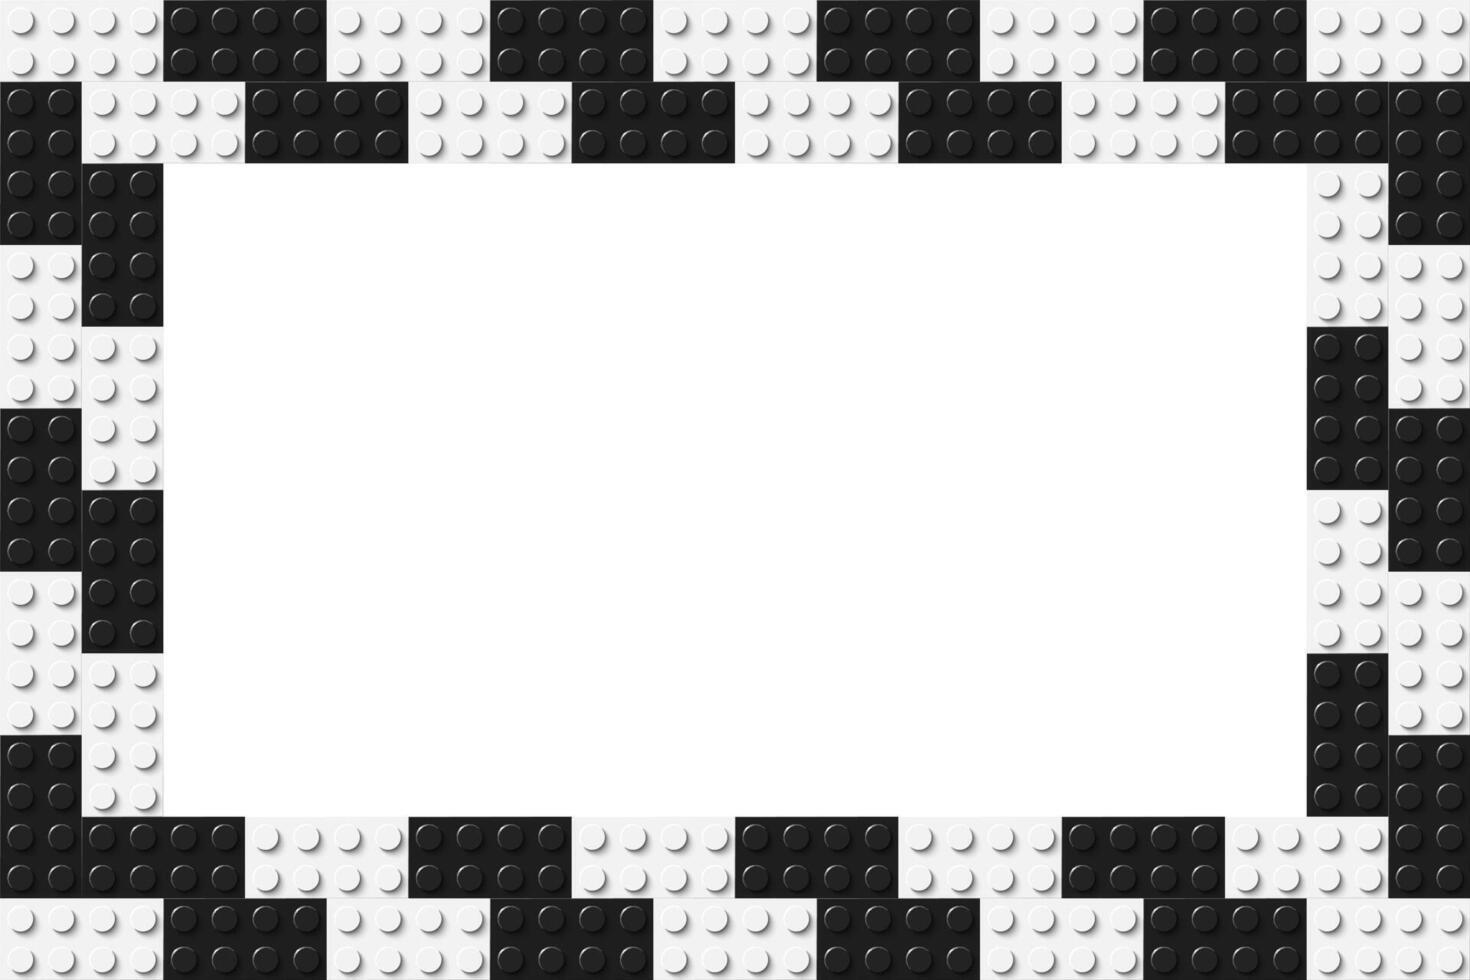 simples quadro, Armação composto do dois linhas do Preto e branco brinquedo blocos. Preto e branco tijolo bandeira. abstrato vetor fundo